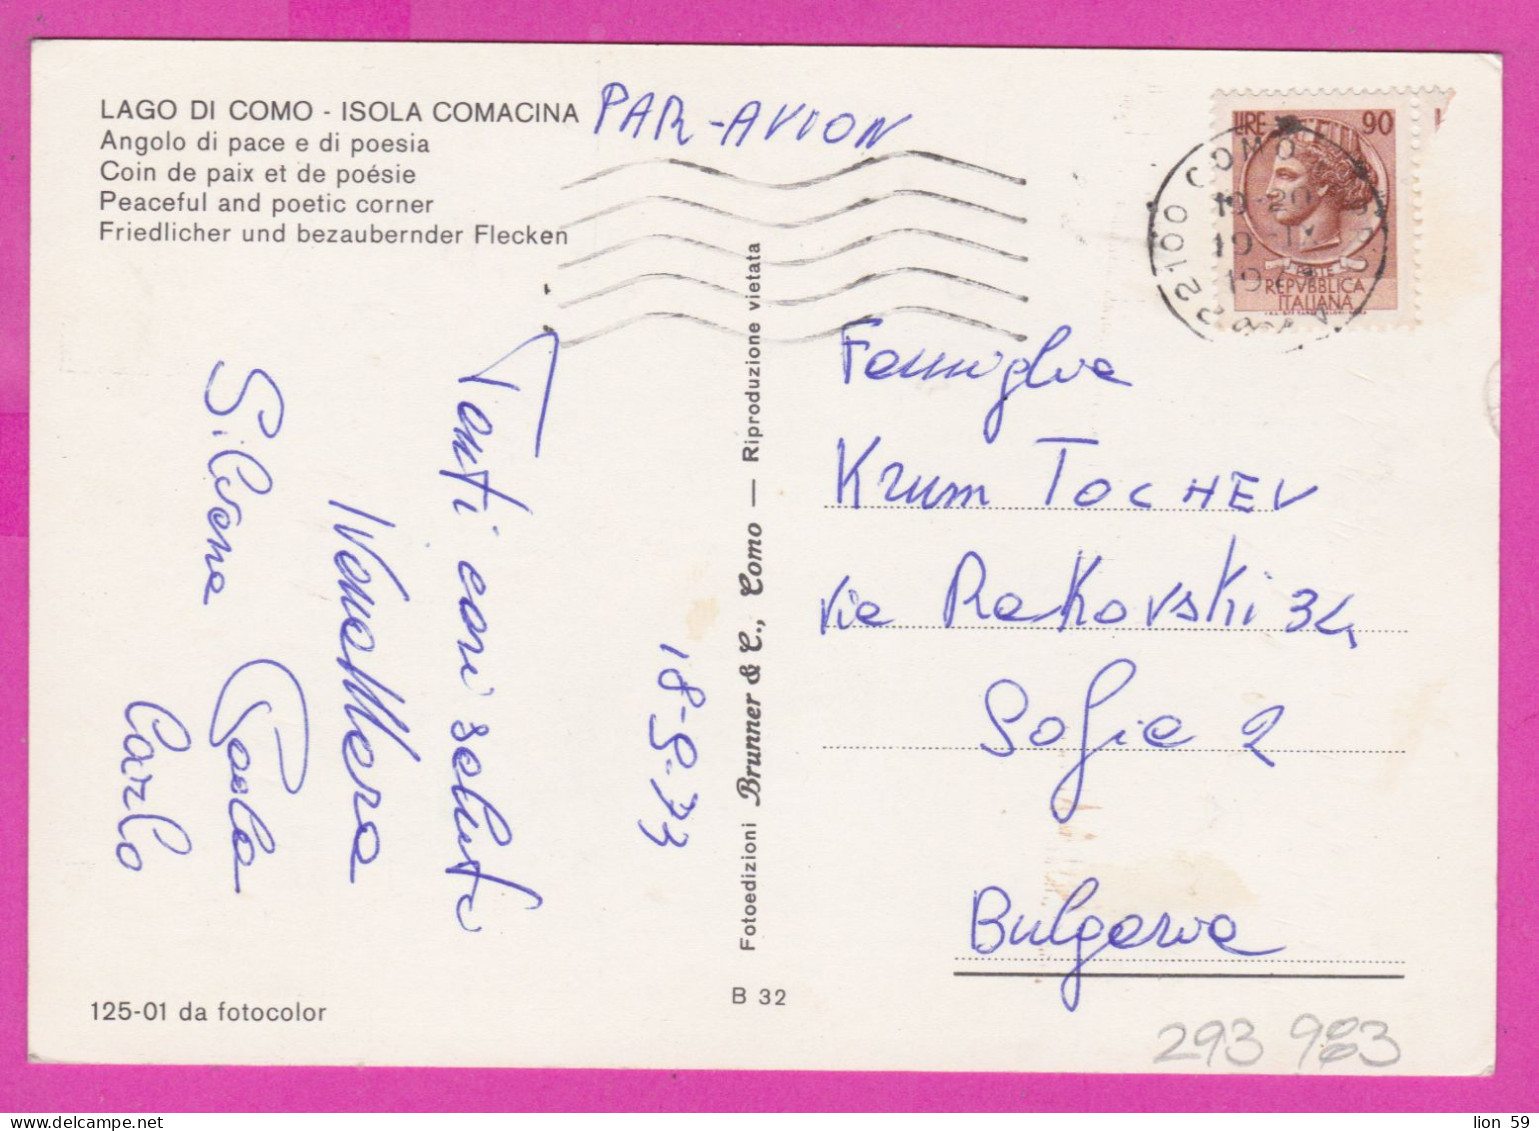 293983 / Italy - LAGO DI COMO - Isola Comacina , Angolo Di Pace E Di Poesia PC 1973 USED 90 L Coin Of Syracuse - 1971-80: Marcofilia